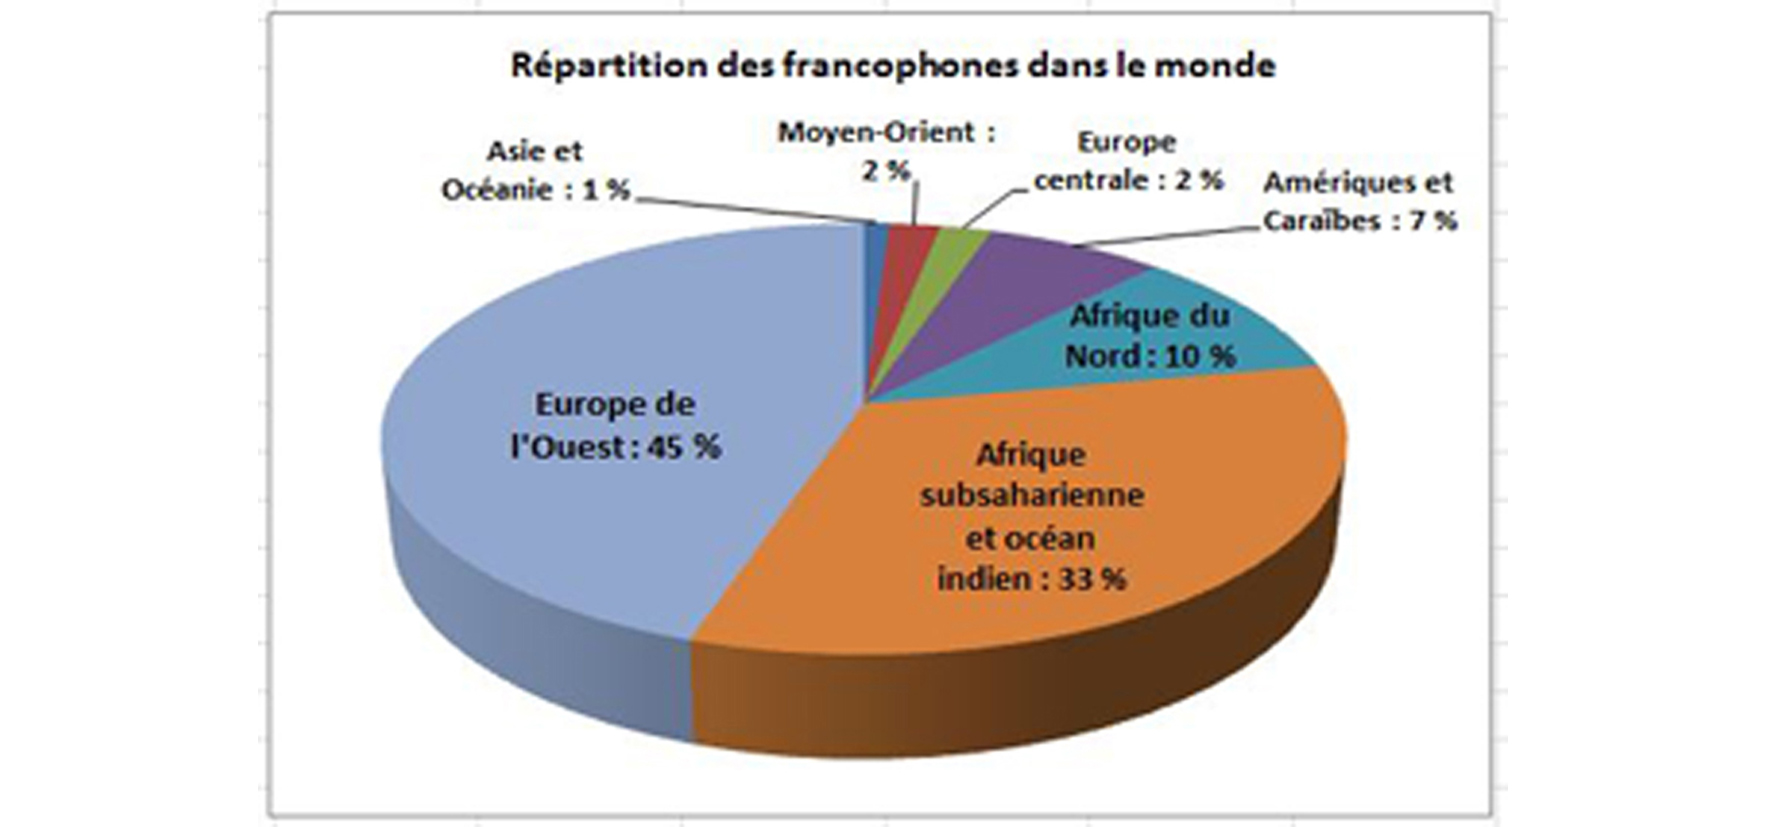 Quelles régions du monde regroupent le plus de francophones?